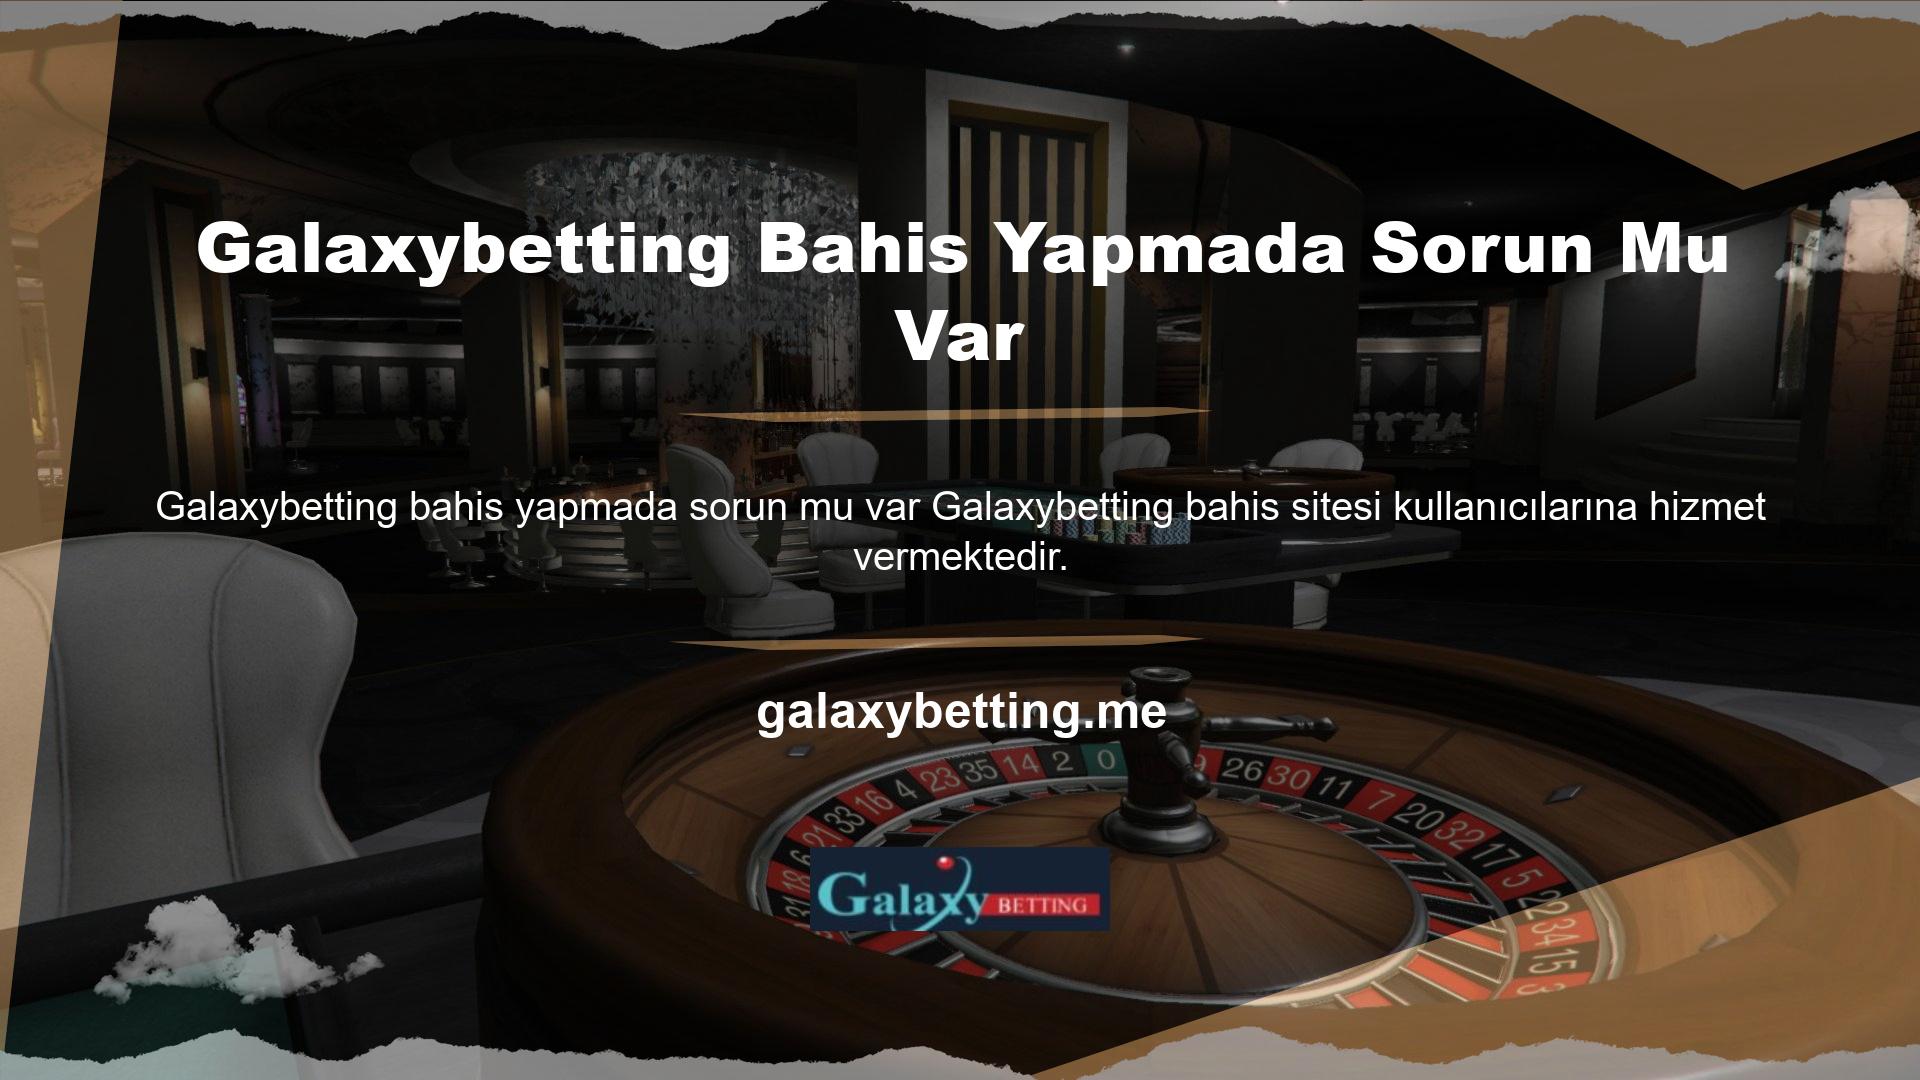 Galaxybetting web sitesi çok çeşitli bahis ve casino oyunlarına erişim sağlar